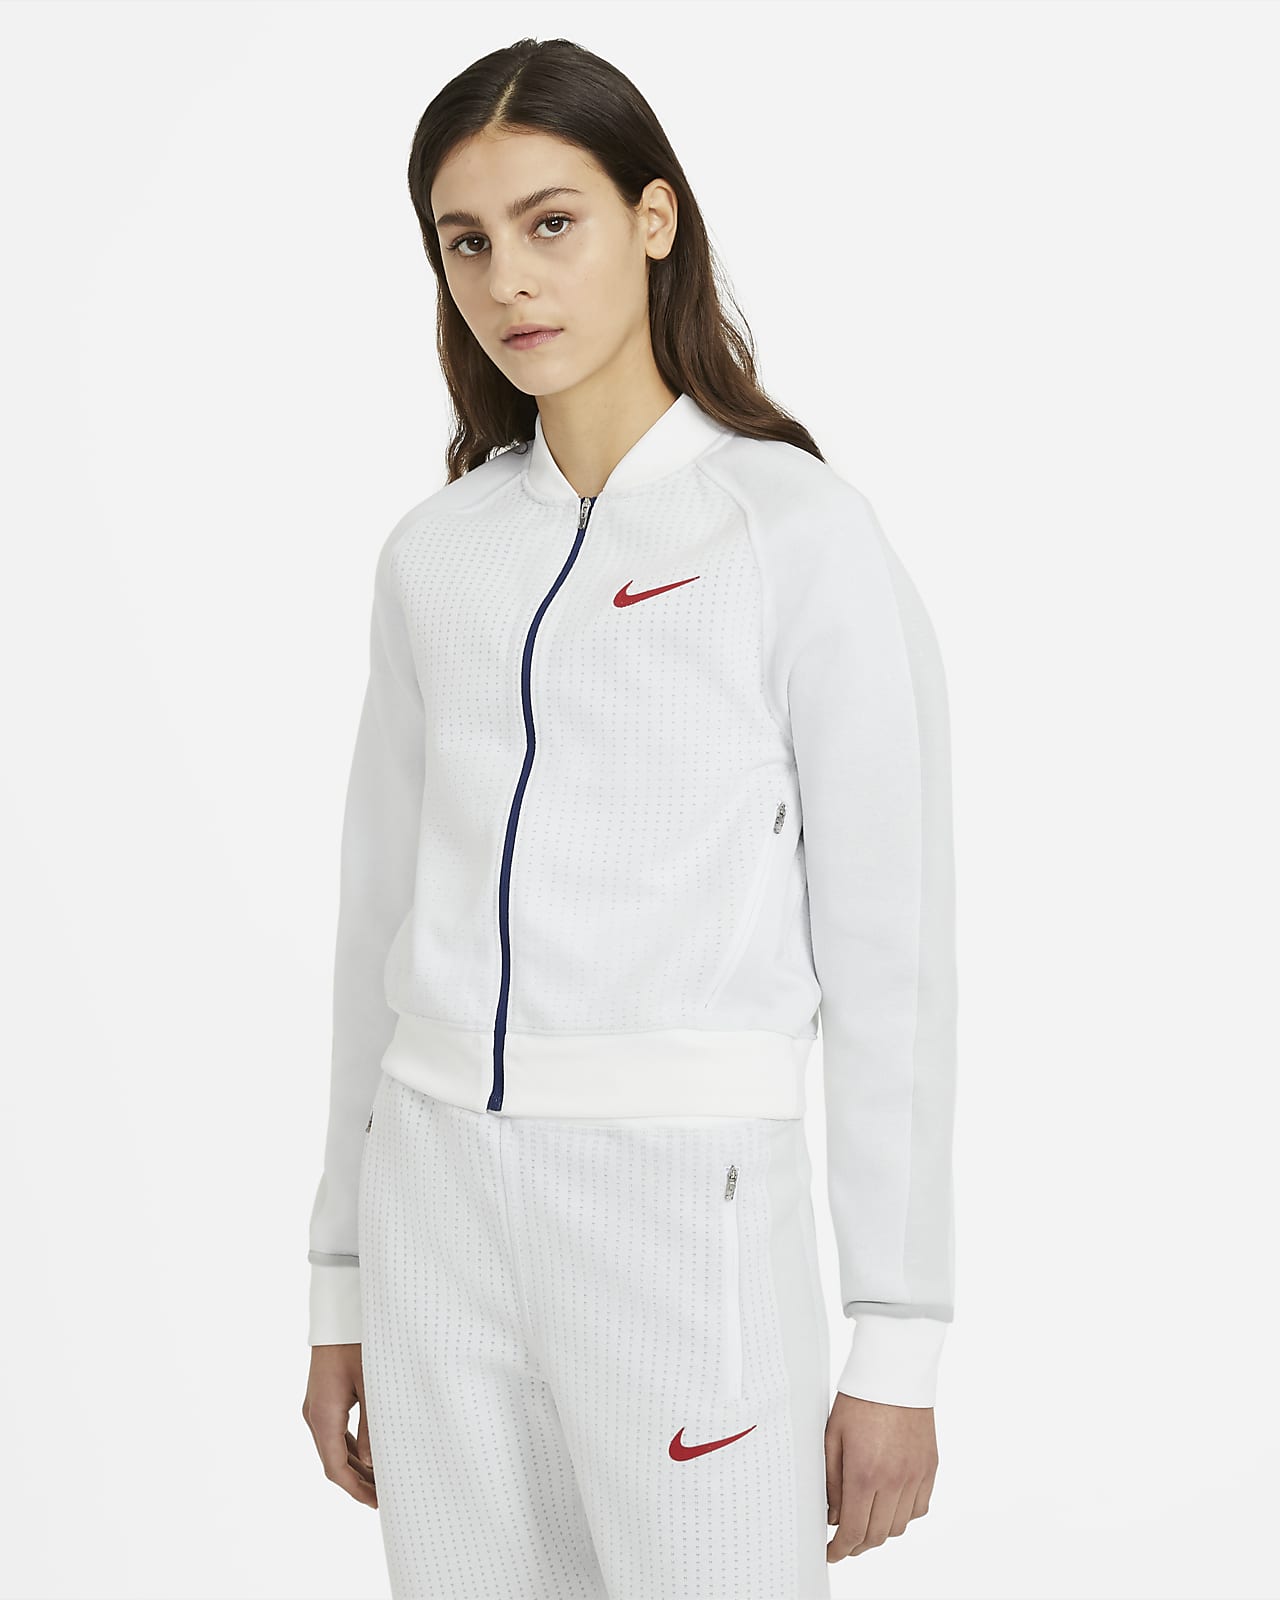 Nike Sportswear Women's Jacket.